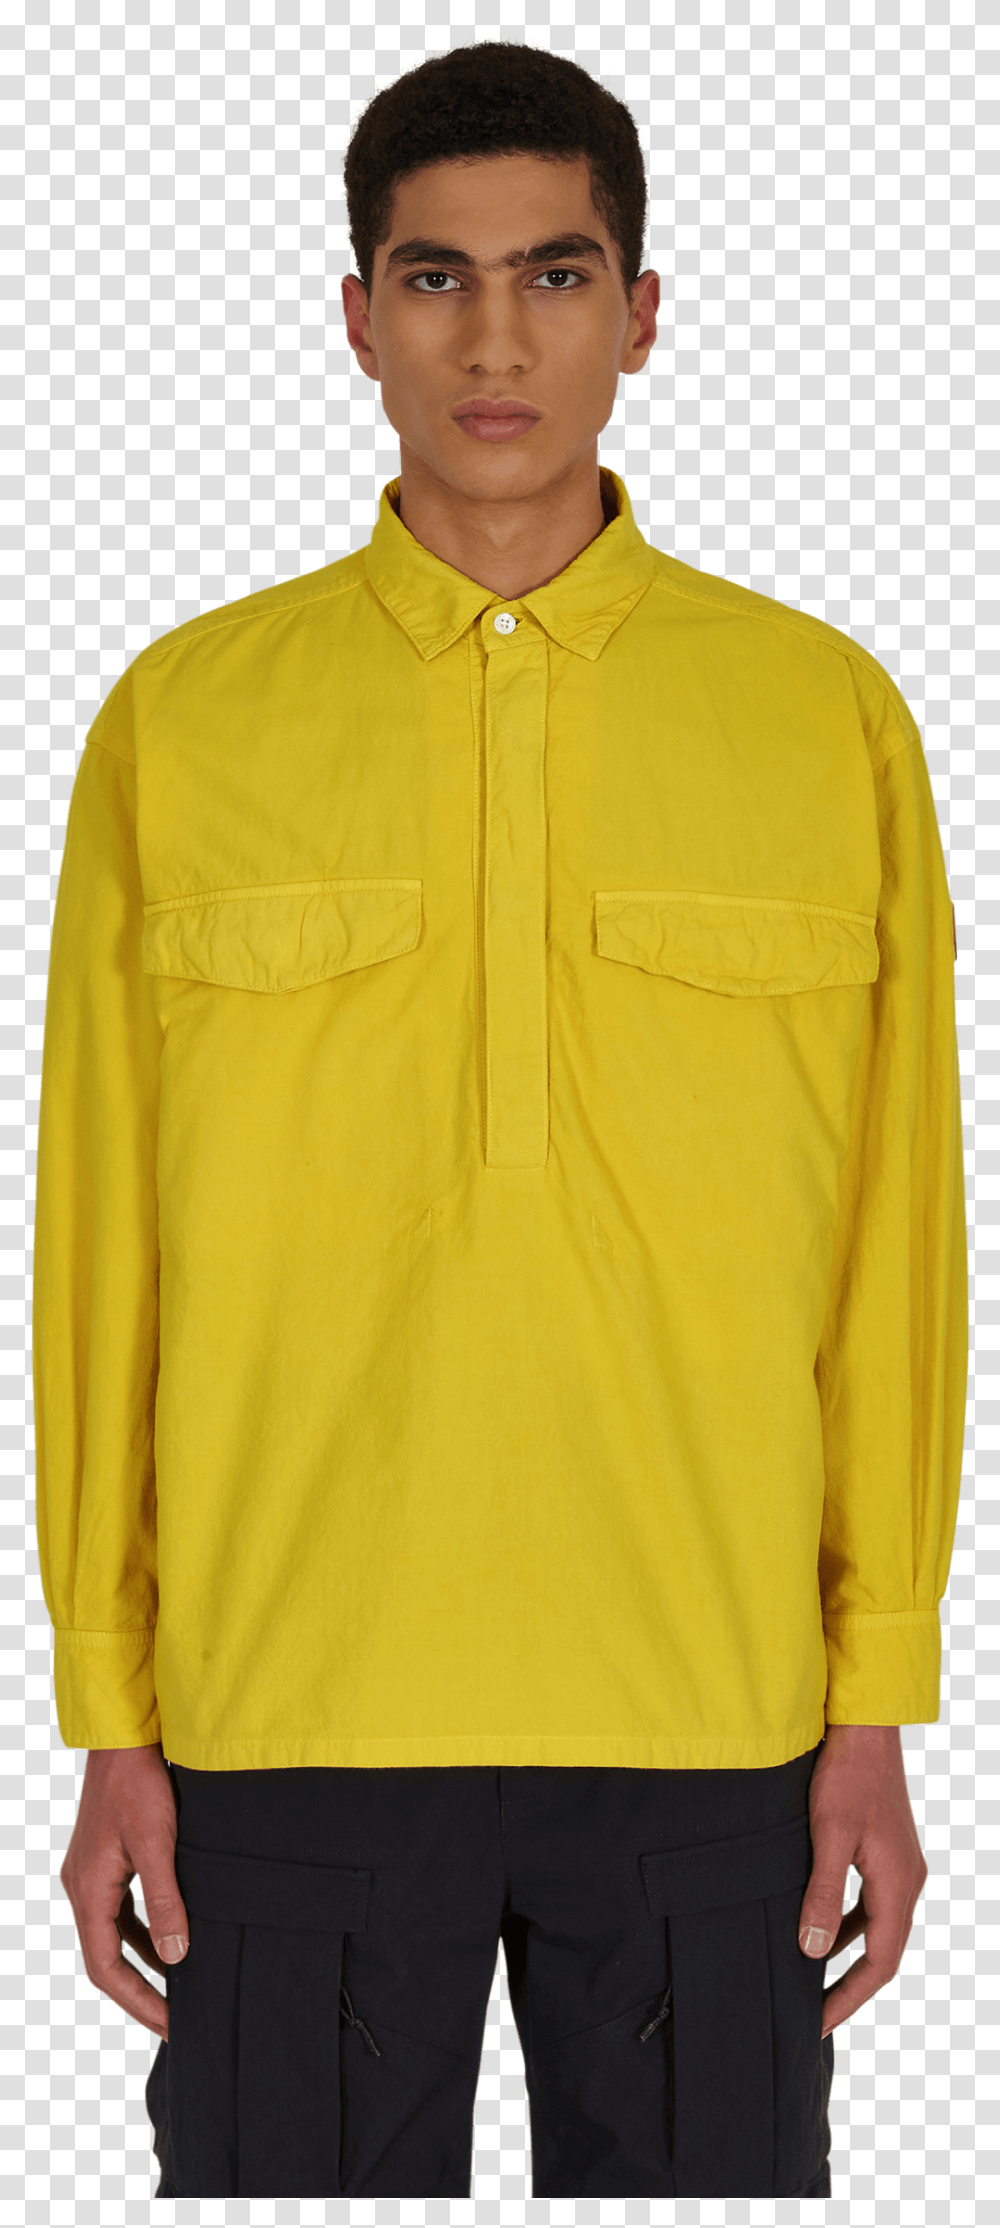 Cav Empt Stussy Flower Embroidered Denim Shirt, Clothing, Apparel, Coat, Jacket Transparent Png